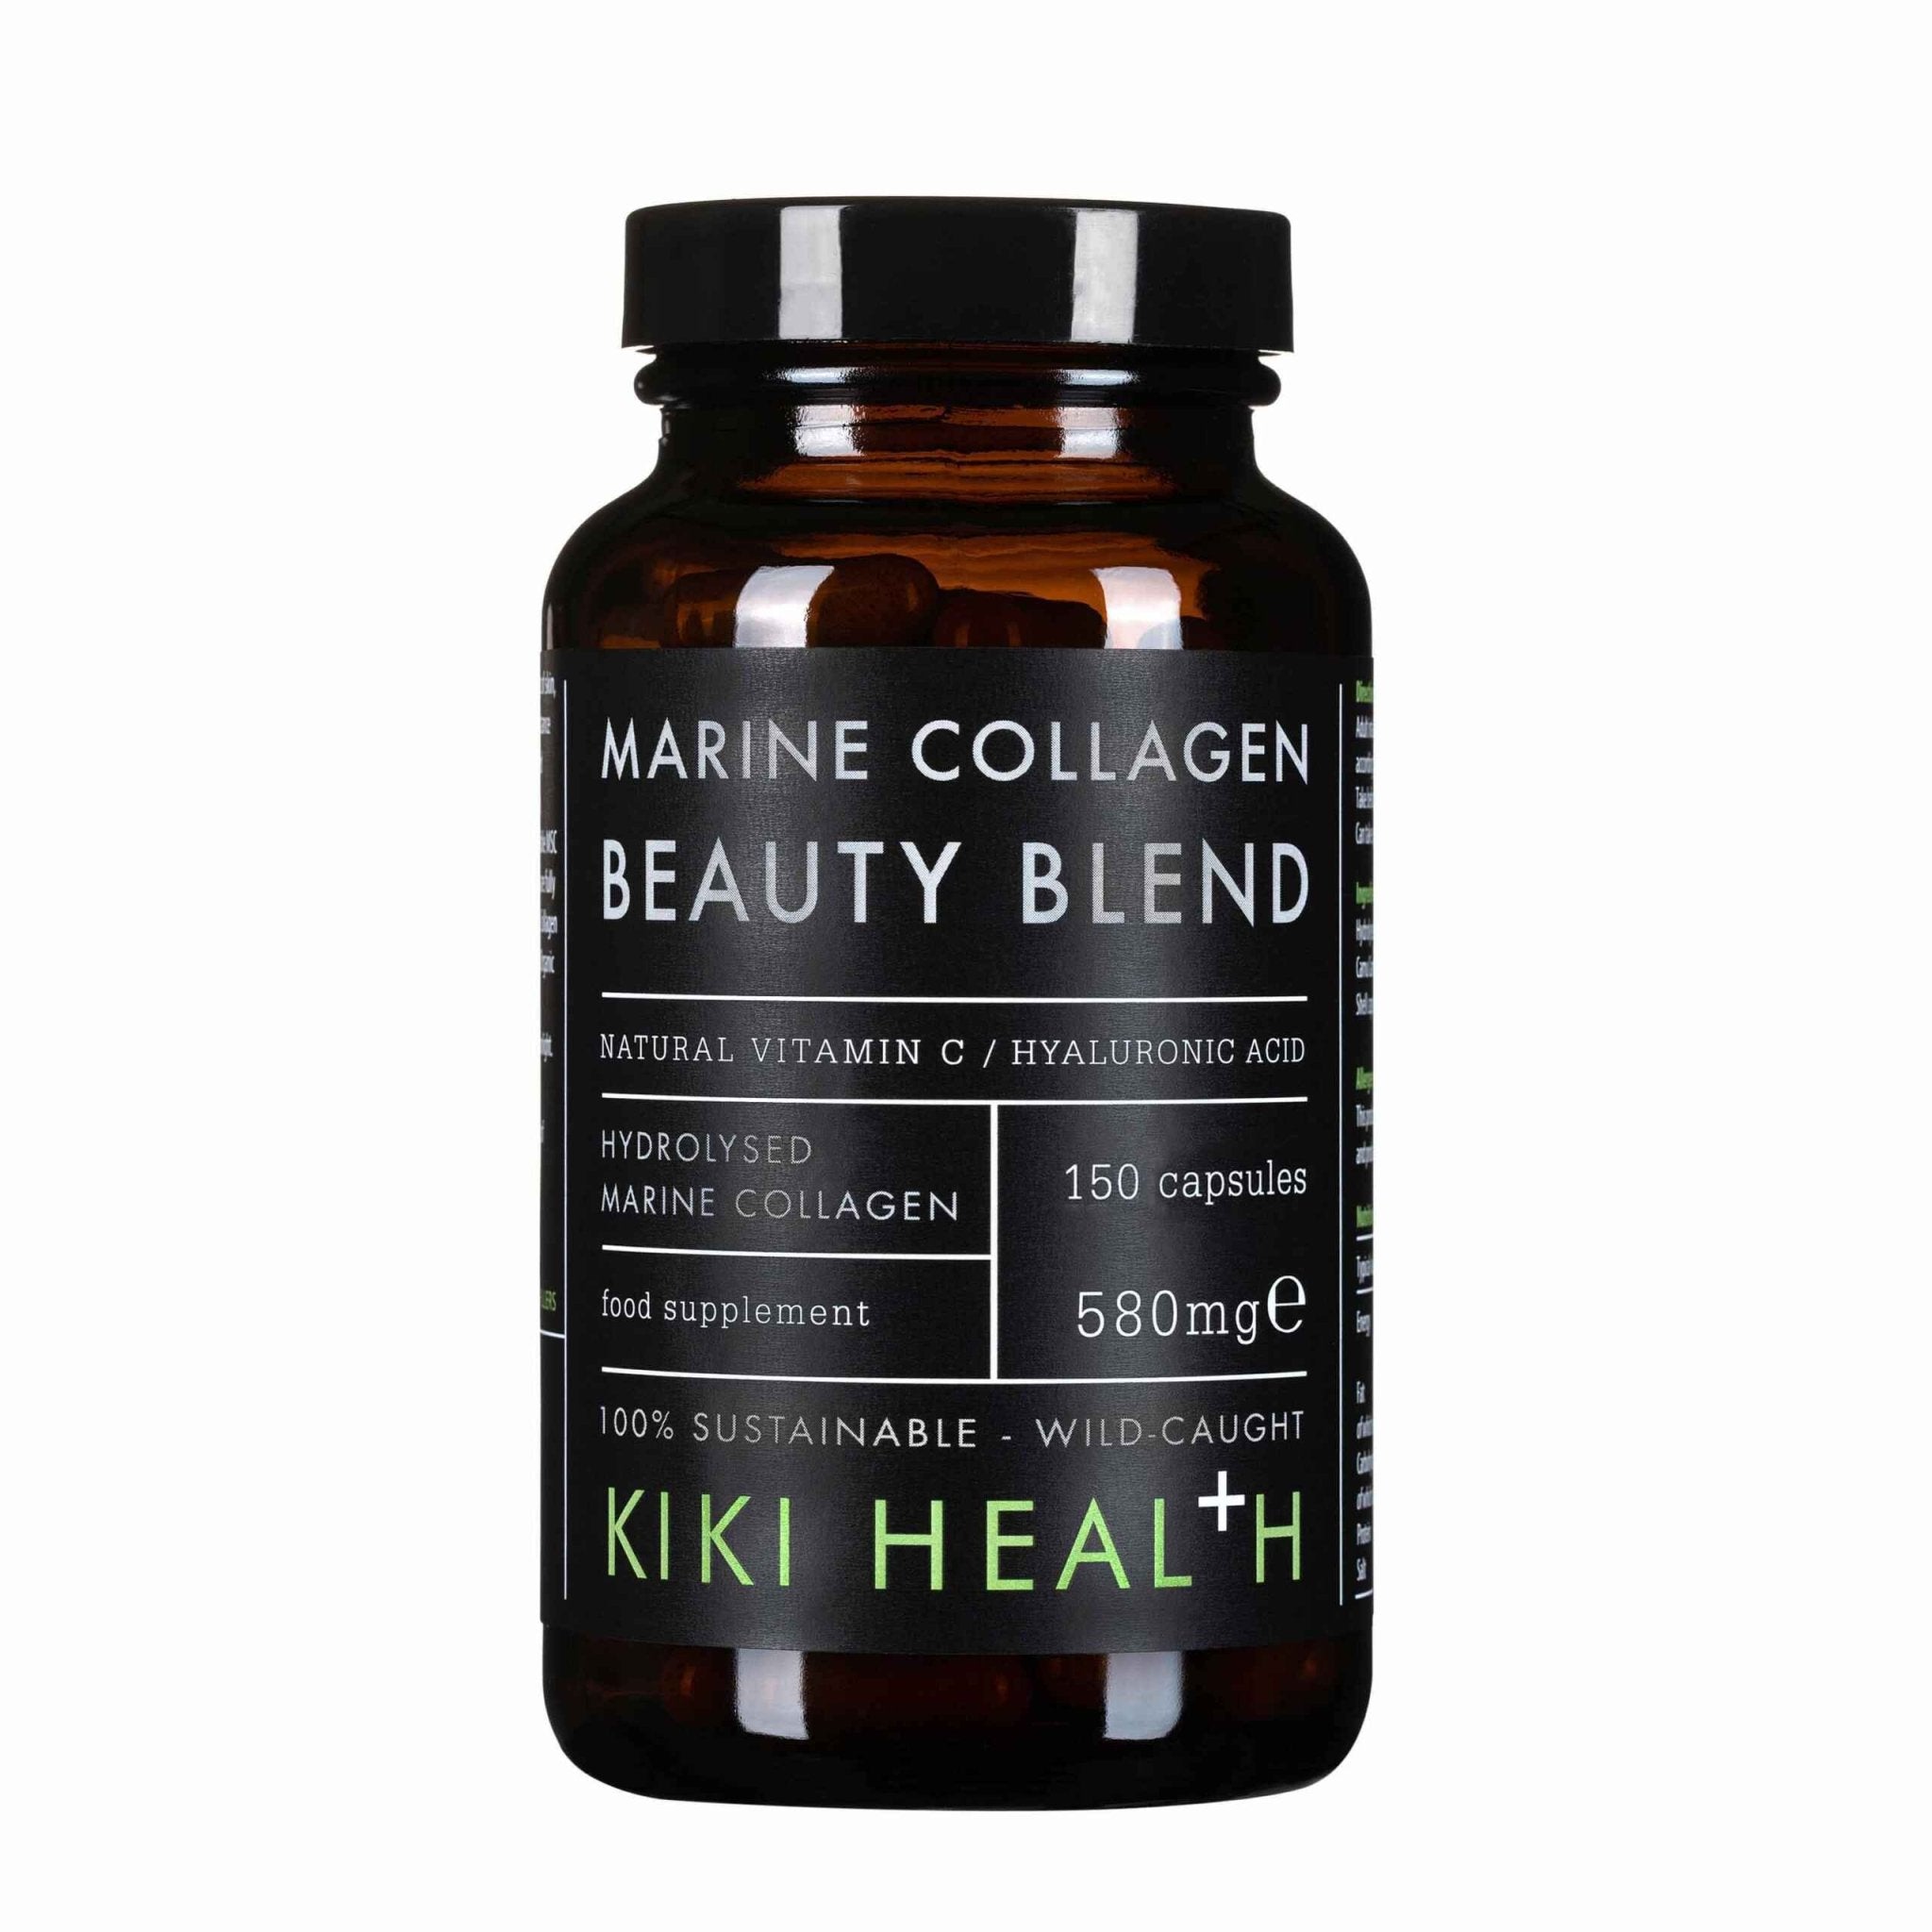 KIKI HEALTHMarine Collagen Beauty BlendMarine Collagen Beauty BlendRED SUPPS